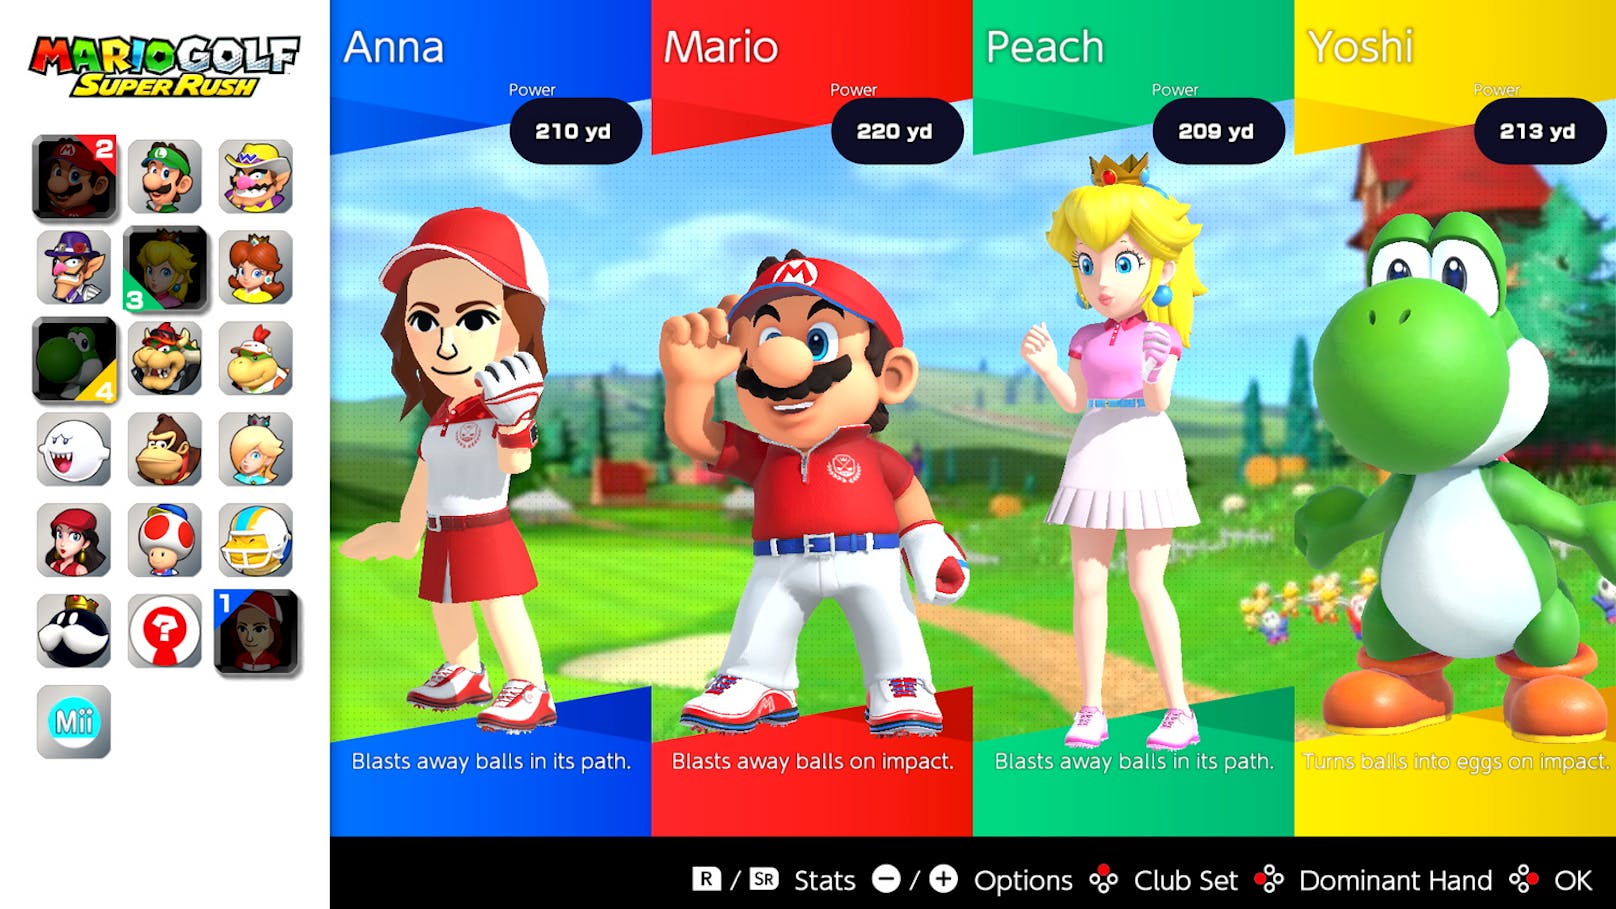 Schnappen sich Mario, Luigi, Yoshi und 13 weitere legendäre Nintendo-Charaktere den Golfschläger, dann weiß man, dass man mit "Mario Golf: Super Rush" keine trockene Sport-Simulation auf der Nintendo Switch erwarten darf.